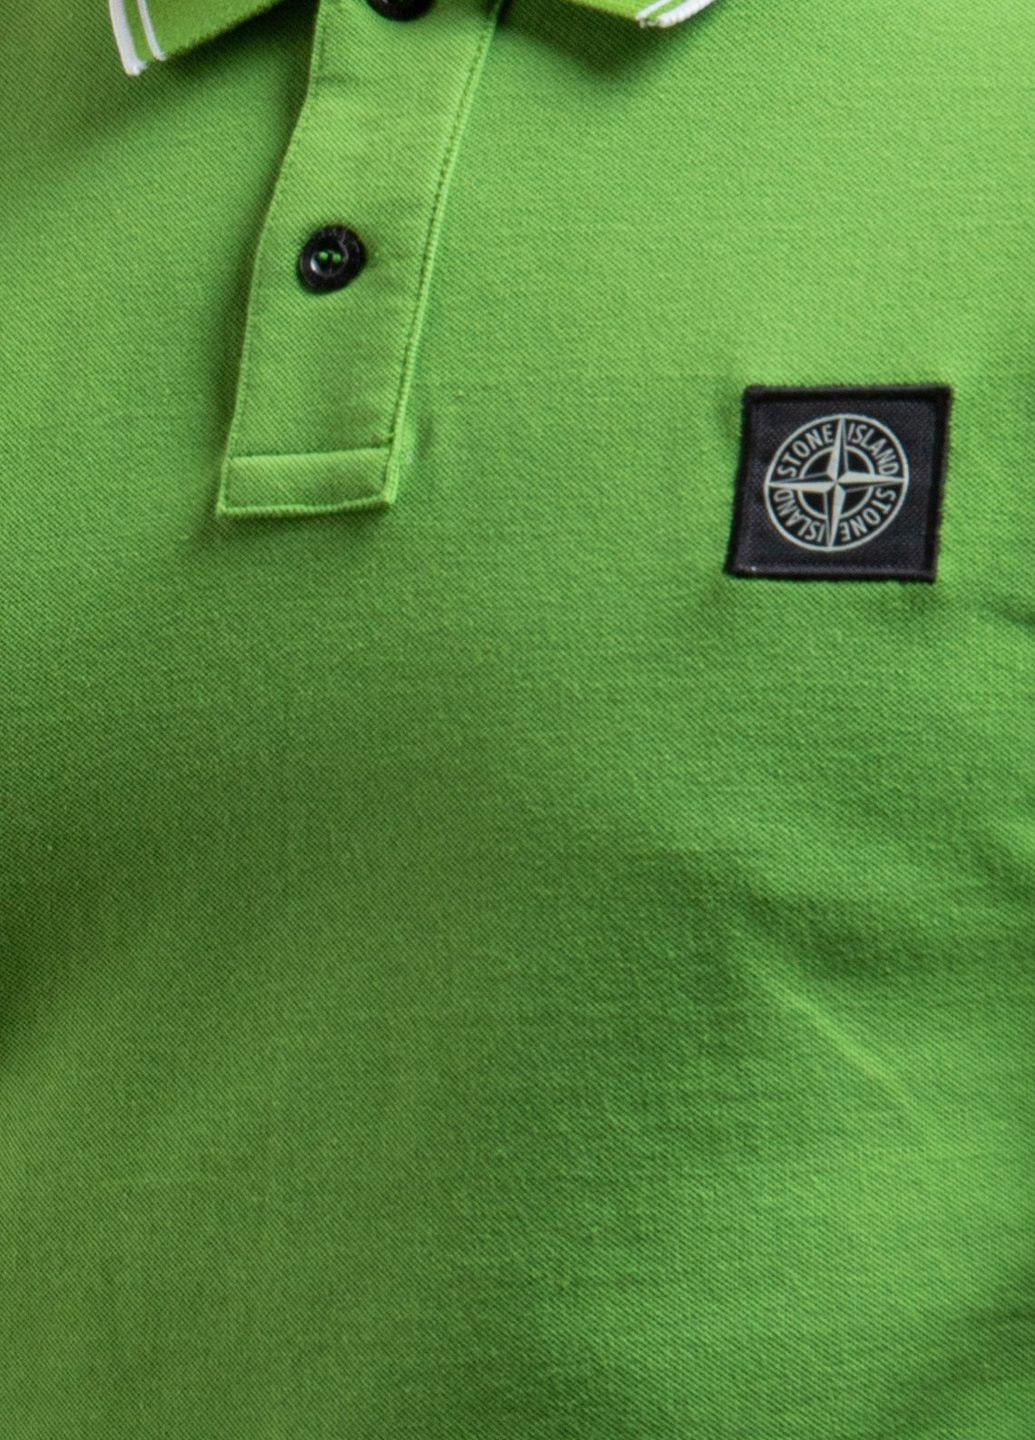 Хаки (оливковая) зеленая футболка-поло с вышитым логотипом Stone Island